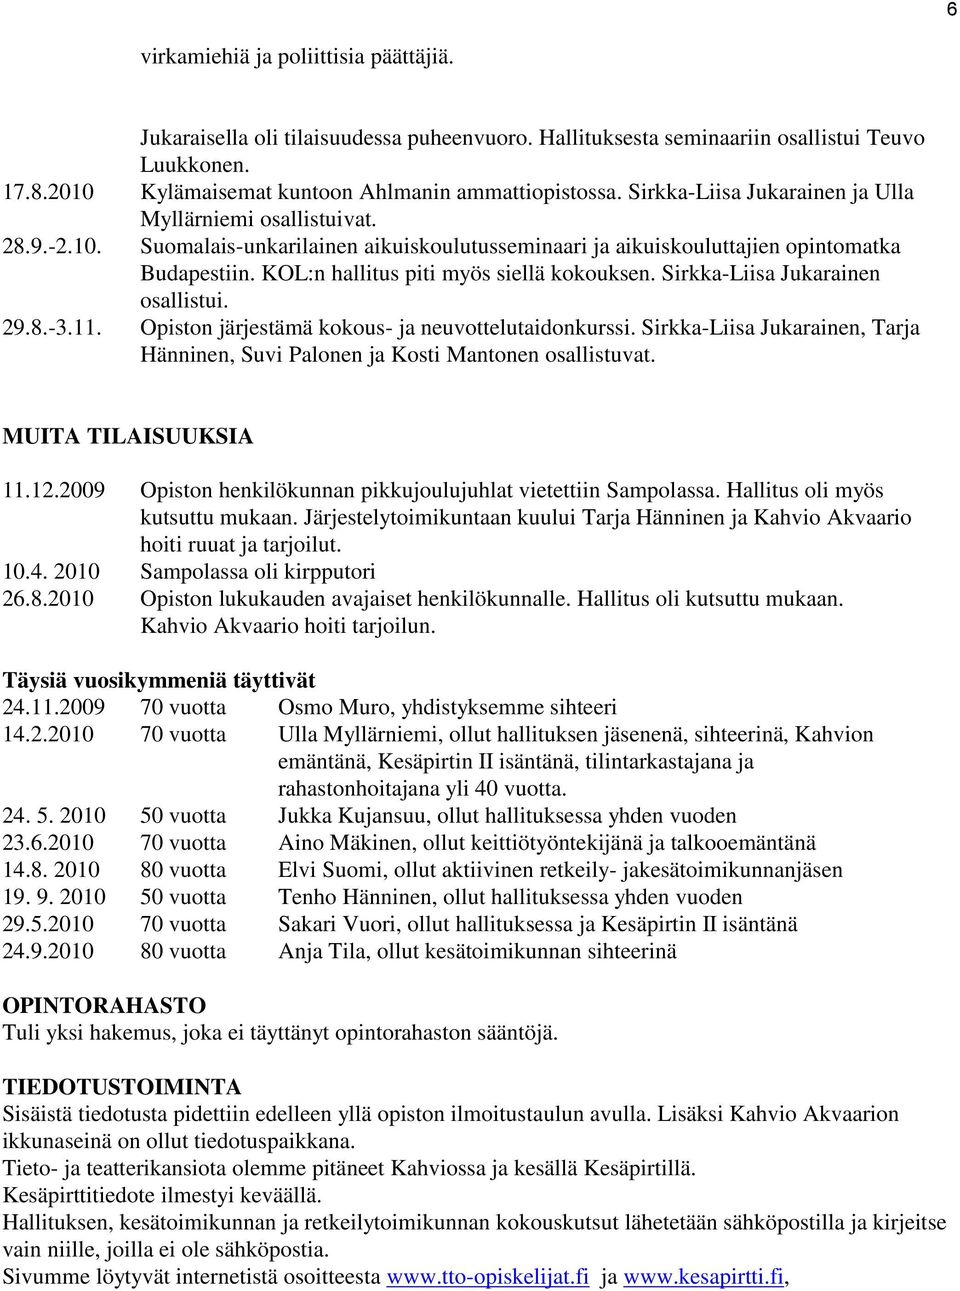 KOL:n hallitus piti myös siellä kokouksen. Sirkka-Liisa Jukarainen osallistui. 29.8.-3.11. Opiston järjestämä kokous- ja neuvottelutaidonkurssi.